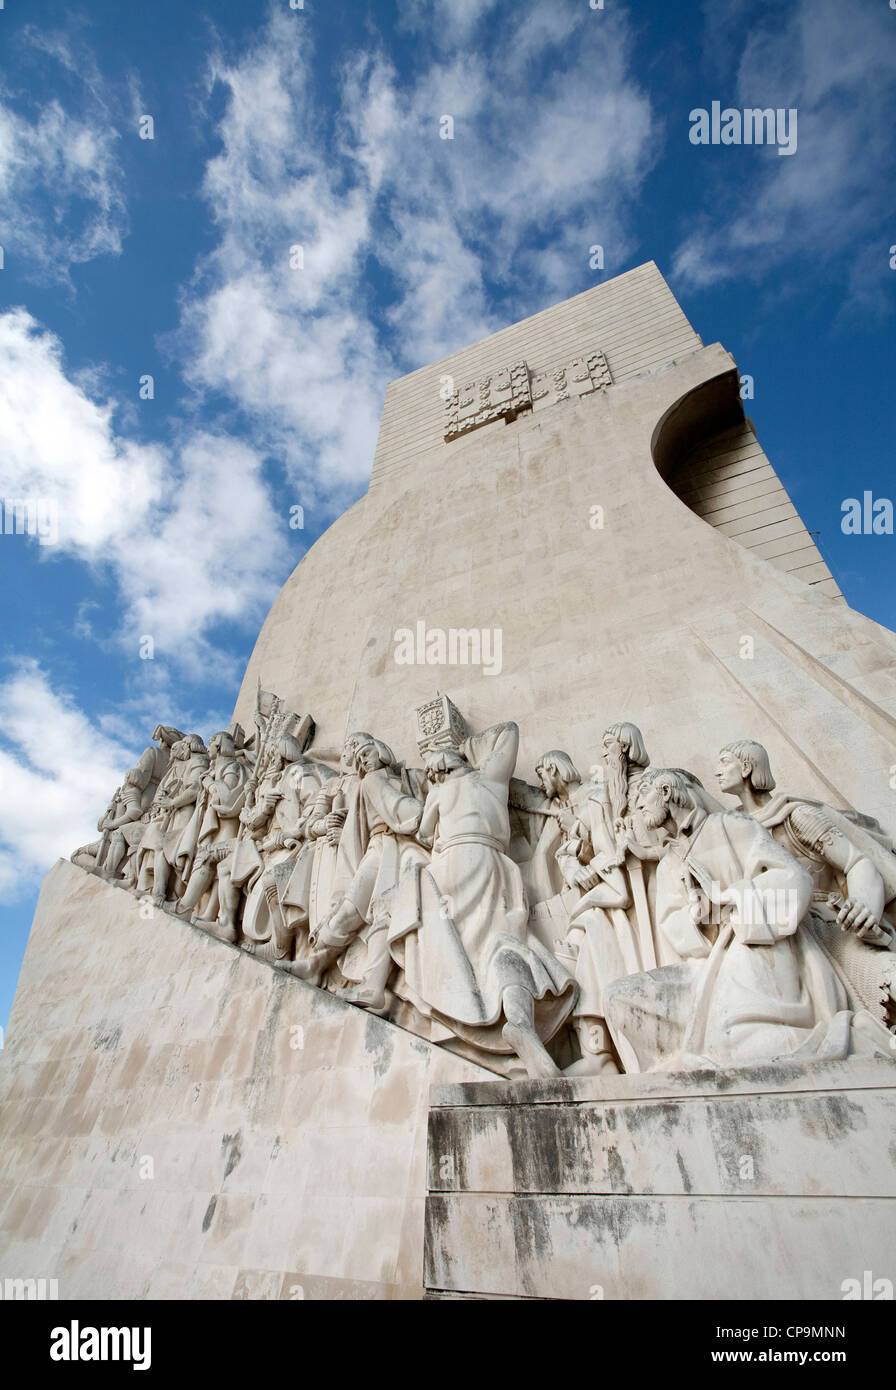 Monumento alle Scoperte portoghese nome dato ad intense attività di esplorazione marittima portoghese durante il XV e XVI secolo. Foto Stock